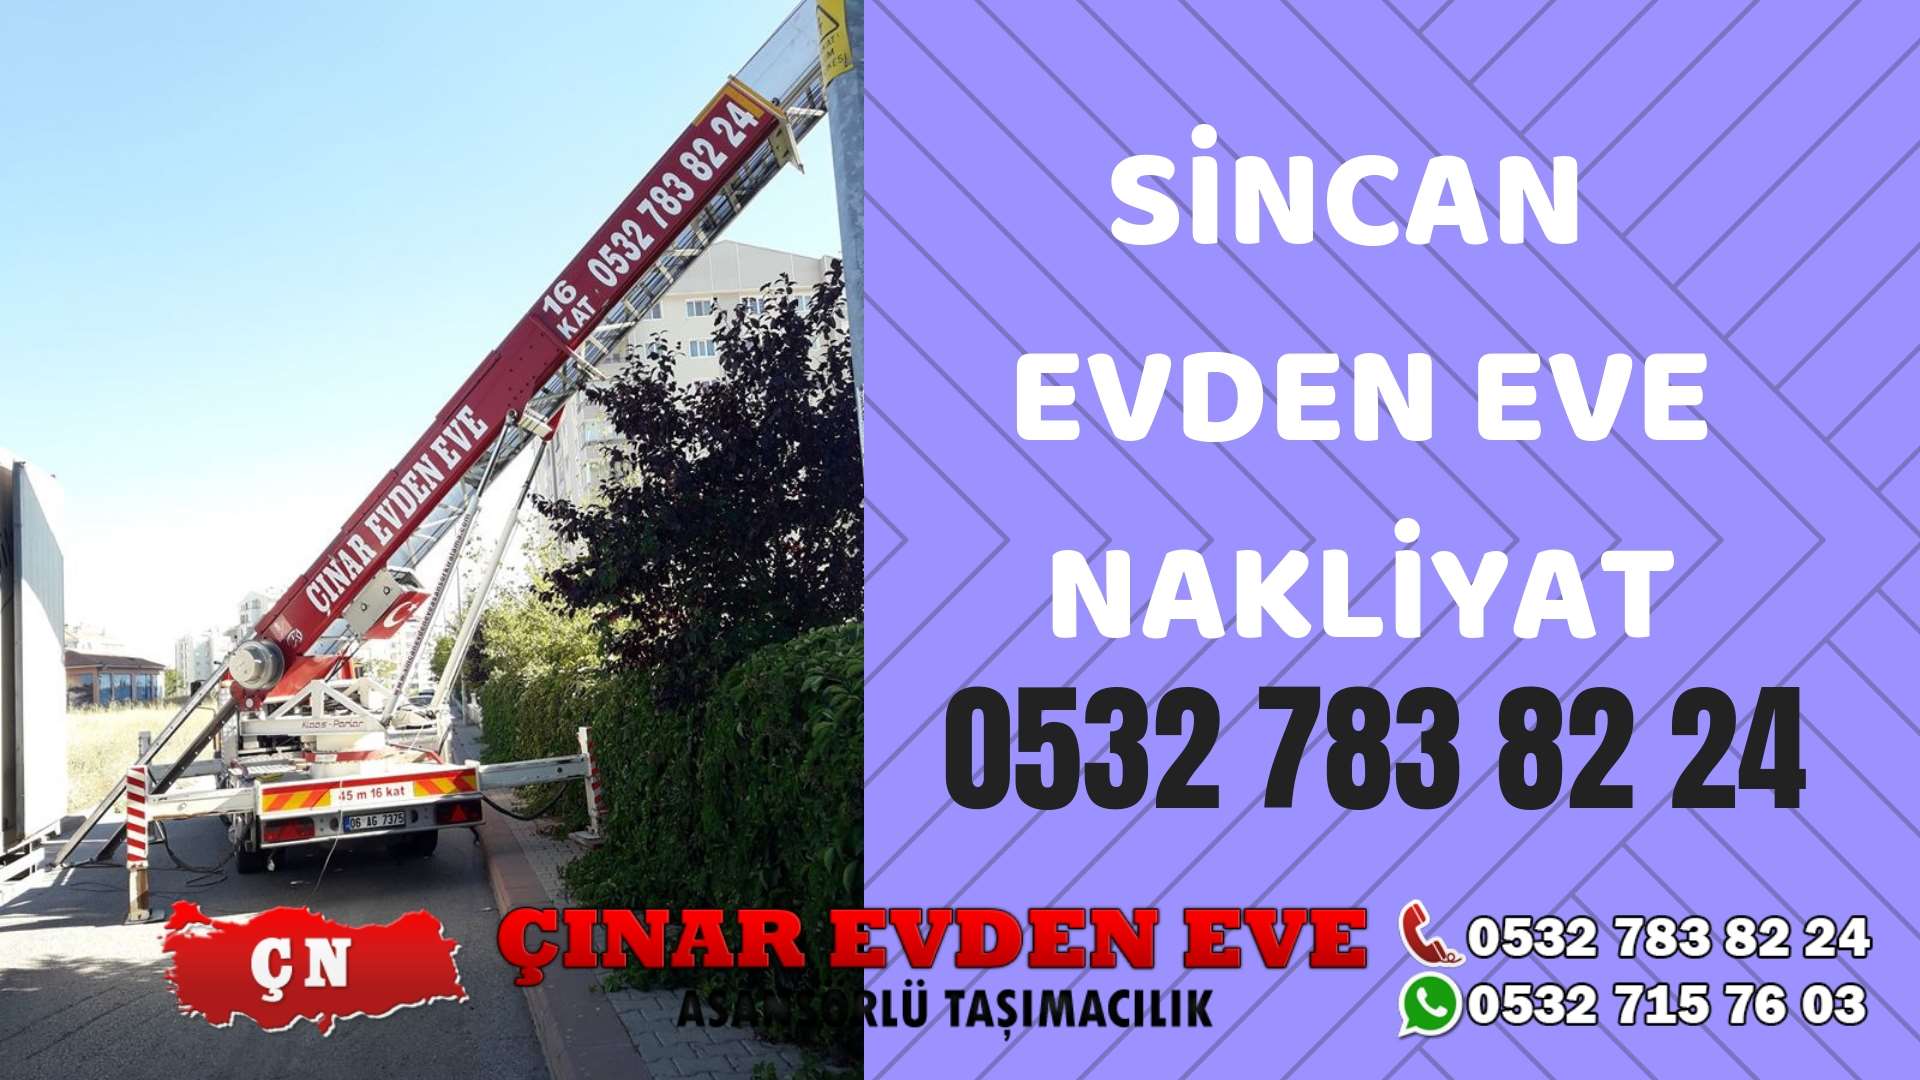 Ankara Ayaş Sincan evden eve asansörlü nakliyat en ucuz nakliye 0532 715 76 03